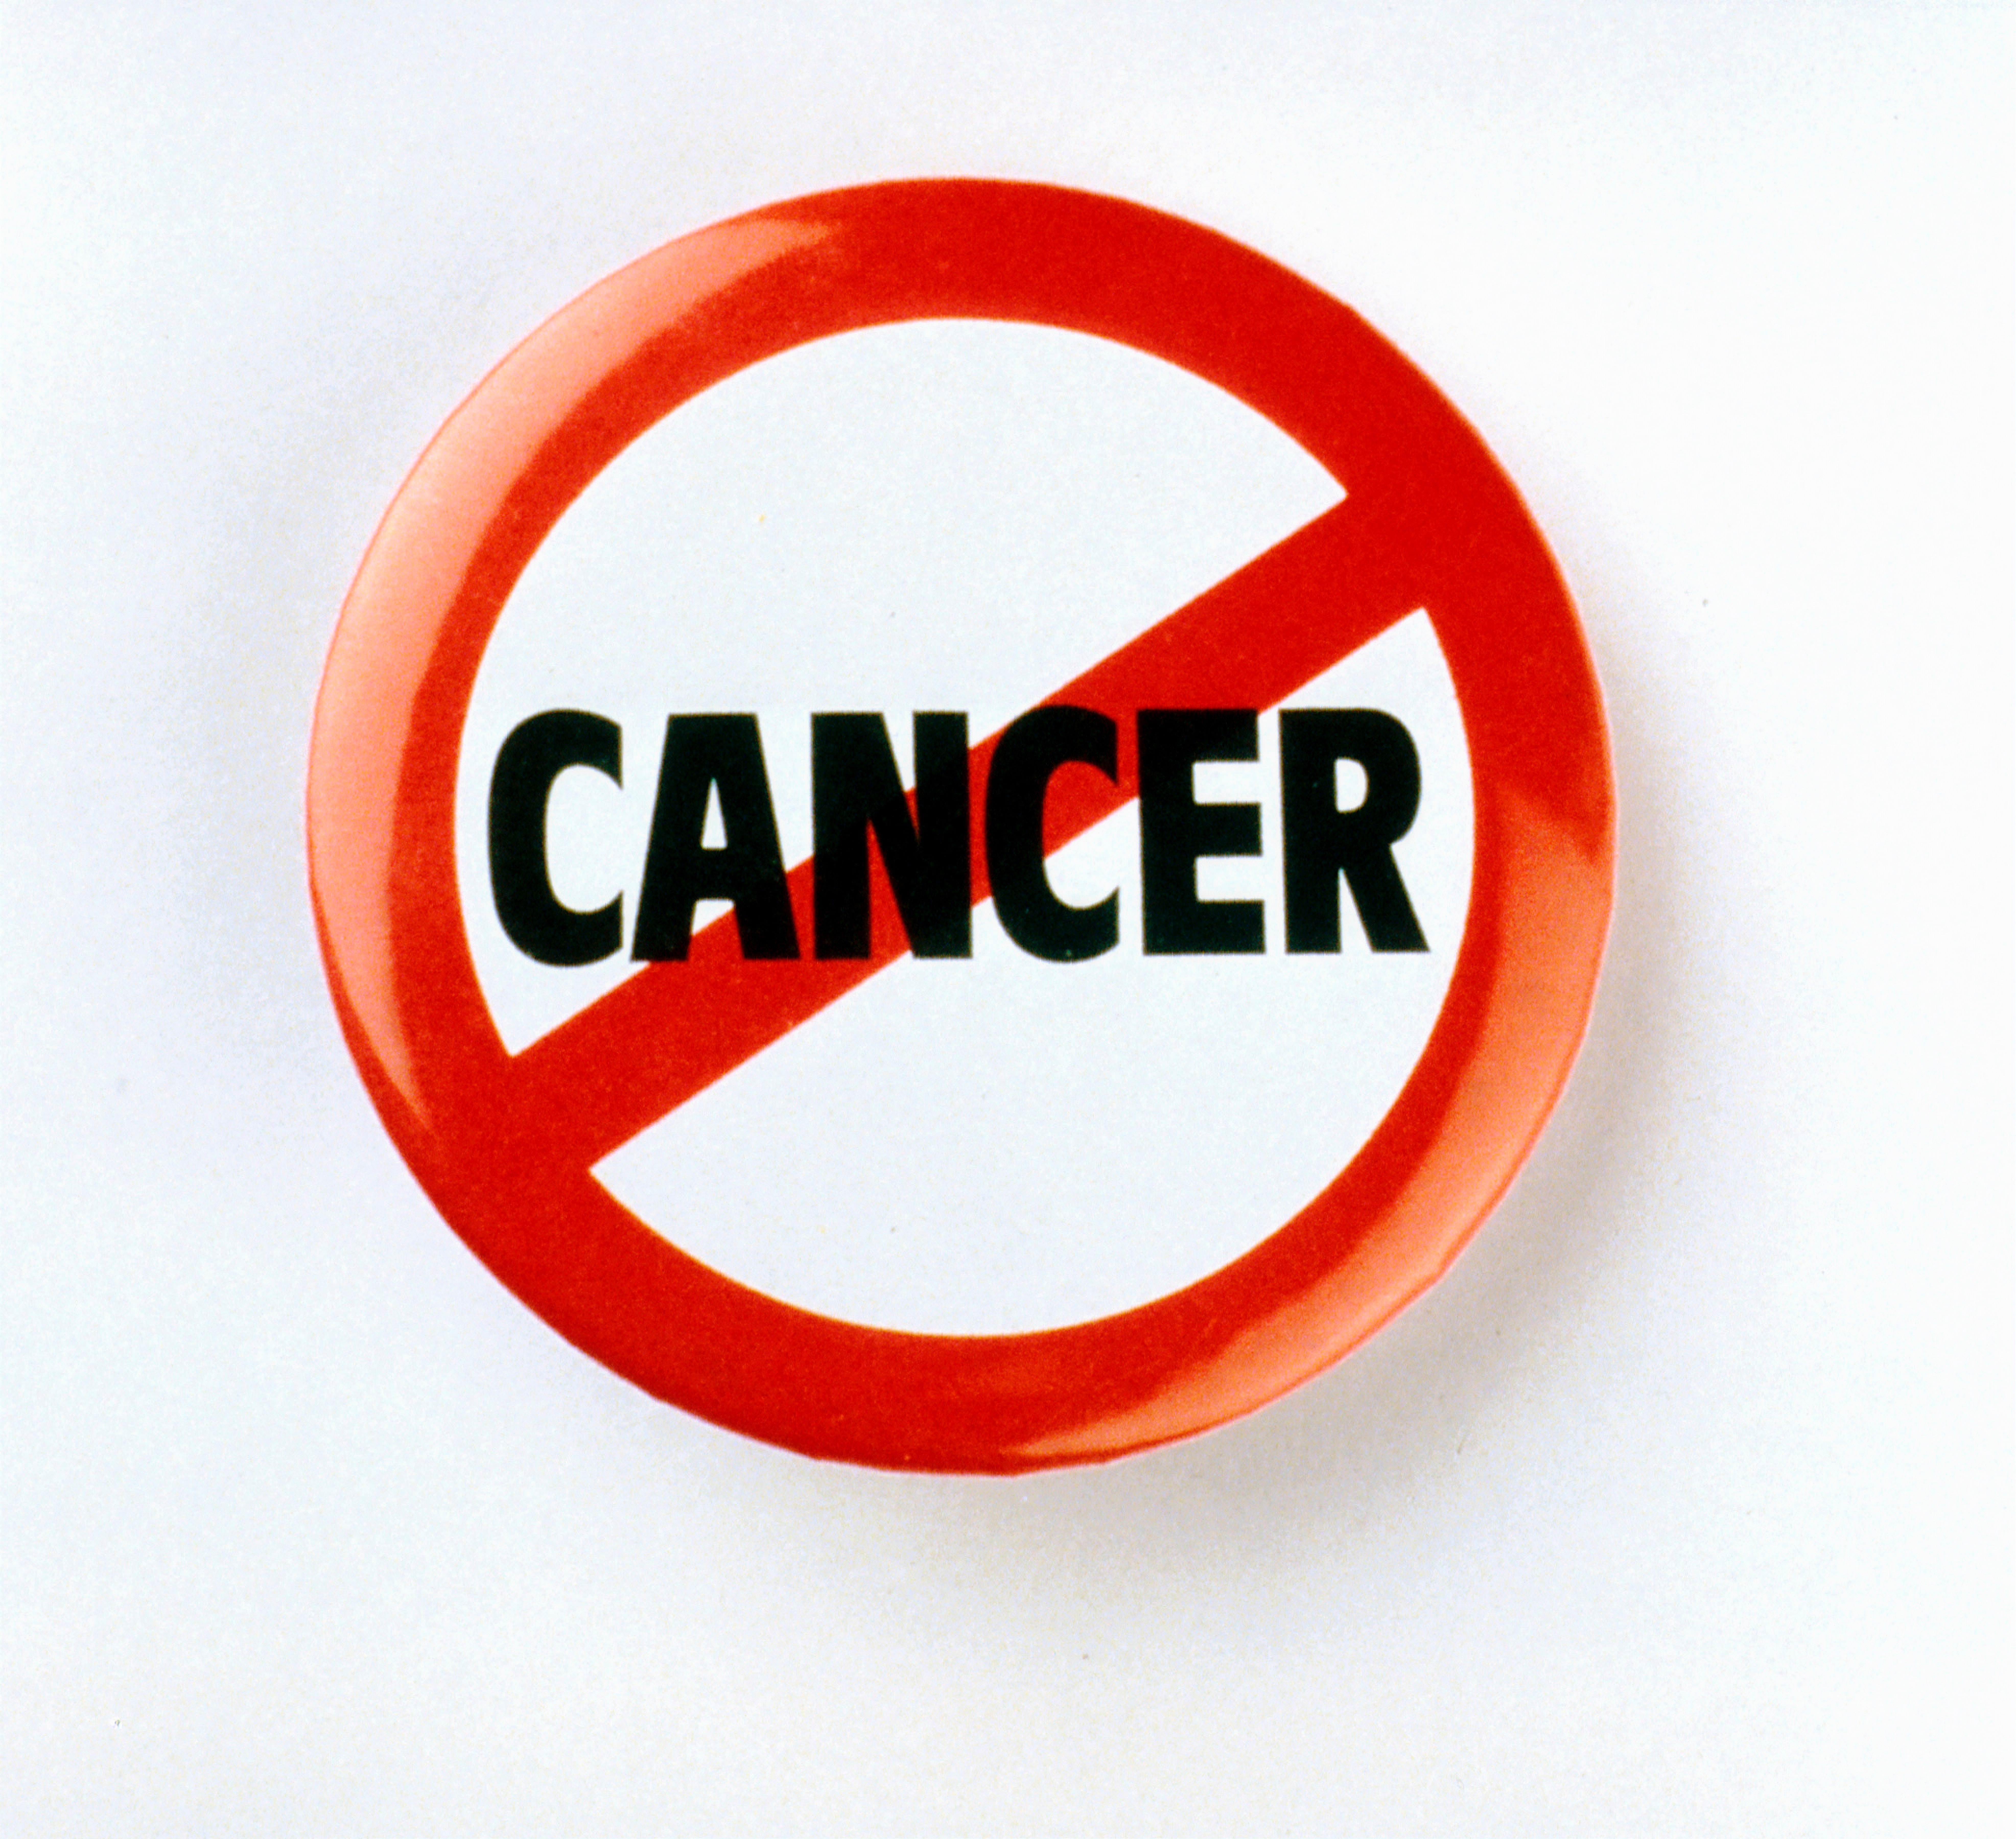 Metaanalyse – 30.000 Krebstote jährlich könnten verhindert werden